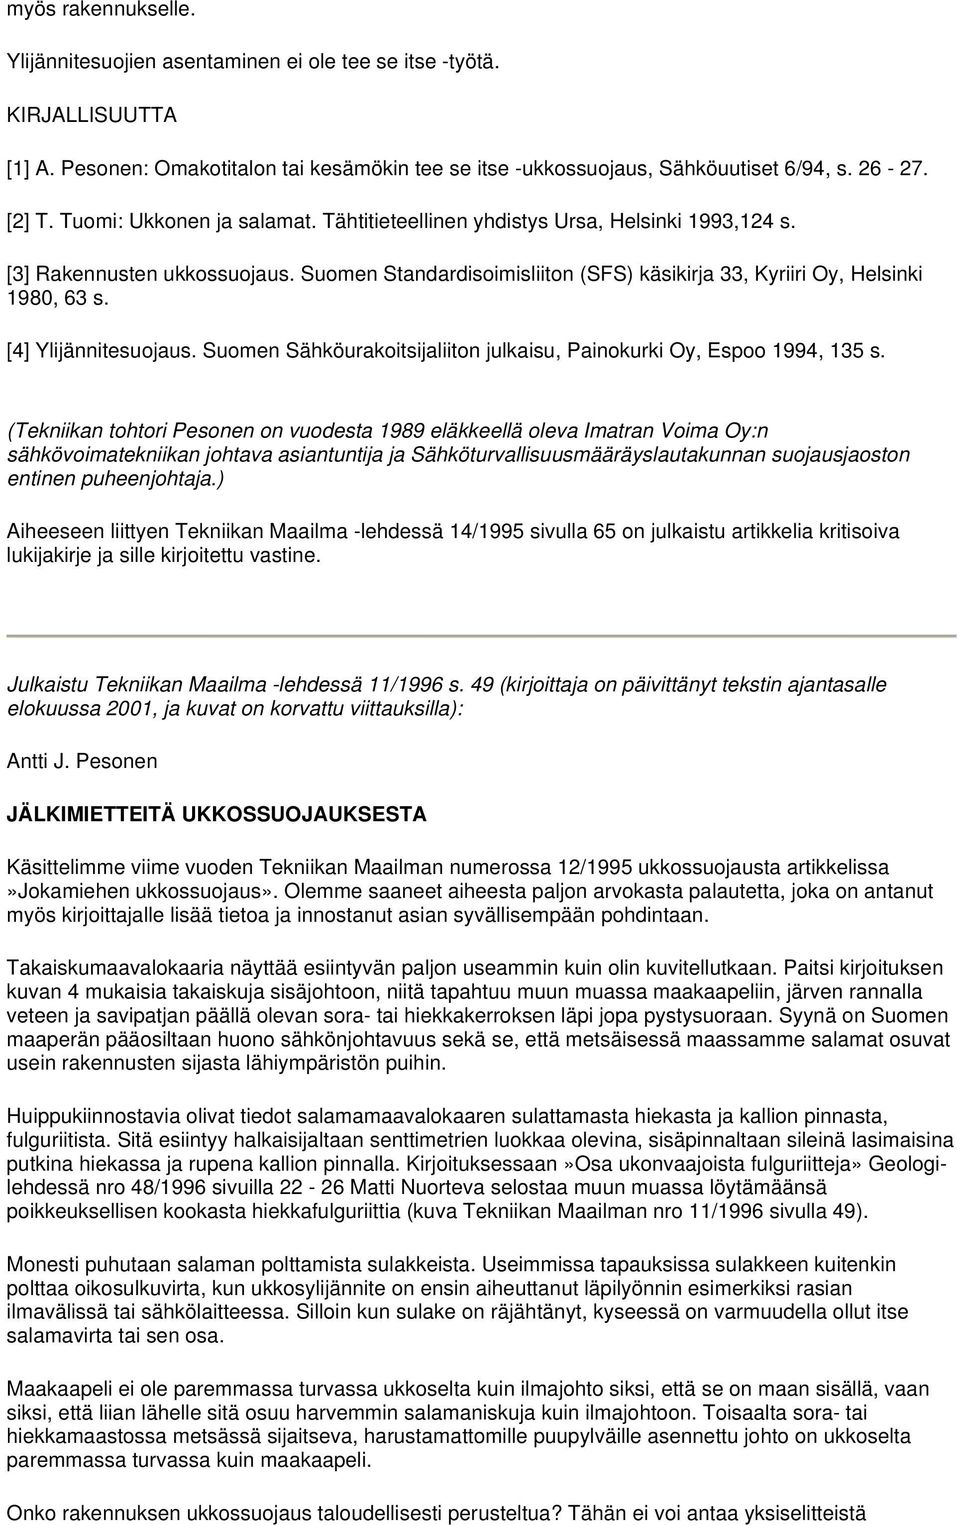 [4] Ylijännitesuojaus. Suomen Sähköurakoitsijaliiton julkaisu, Painokurki Oy, Espoo 1994, 135 s.